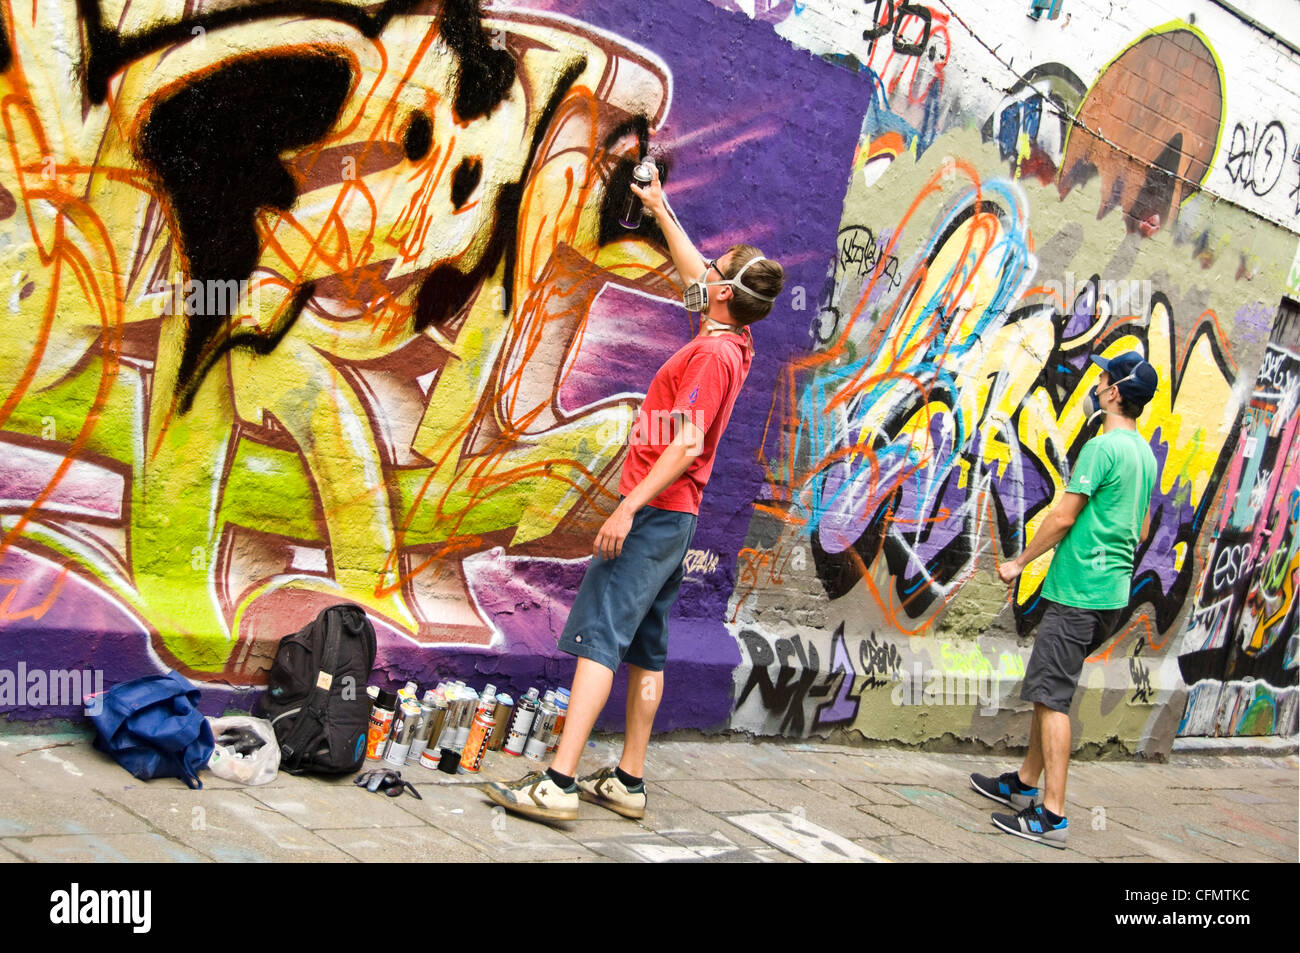 Horizontale Ansicht der Graffiti Gasse Werregaran Straat in Gent, mit zwei Künstlern Spritzlackierung ihre Kunst auf dem Gehweg-Wand. Stockfoto